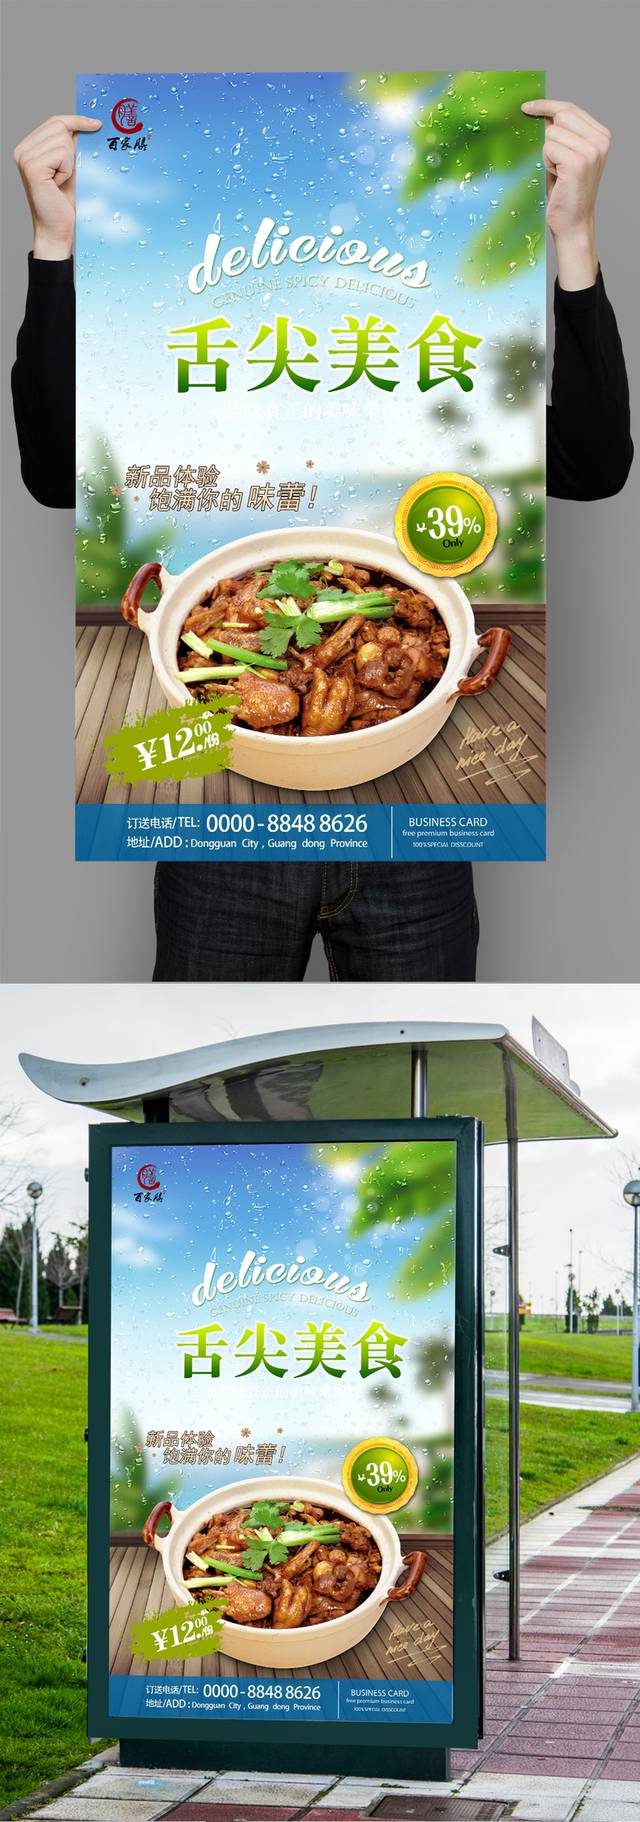 蓝色清新鸡公煲海报宣传设计